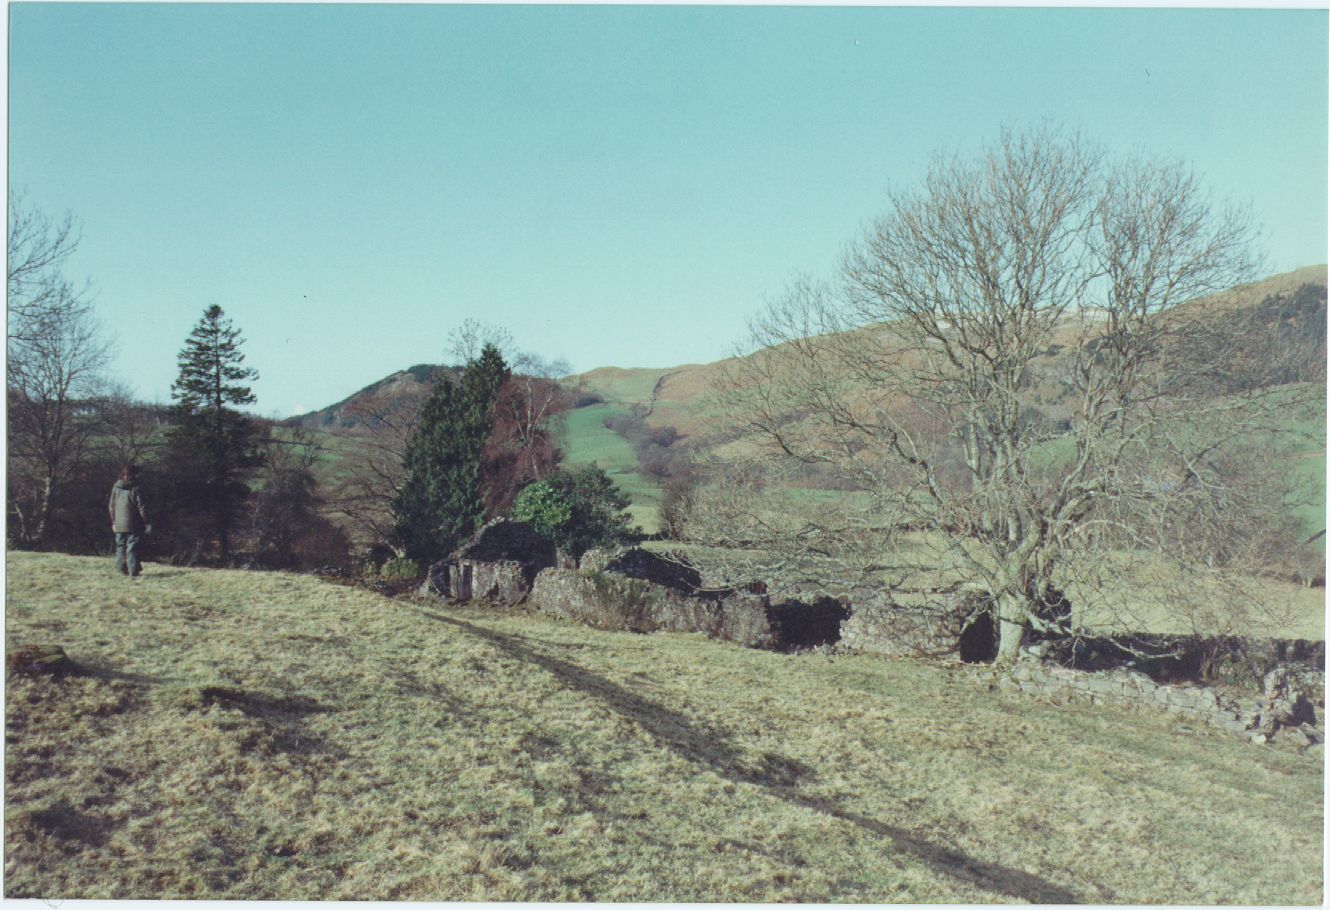 Upper Cairneycroft in ruins